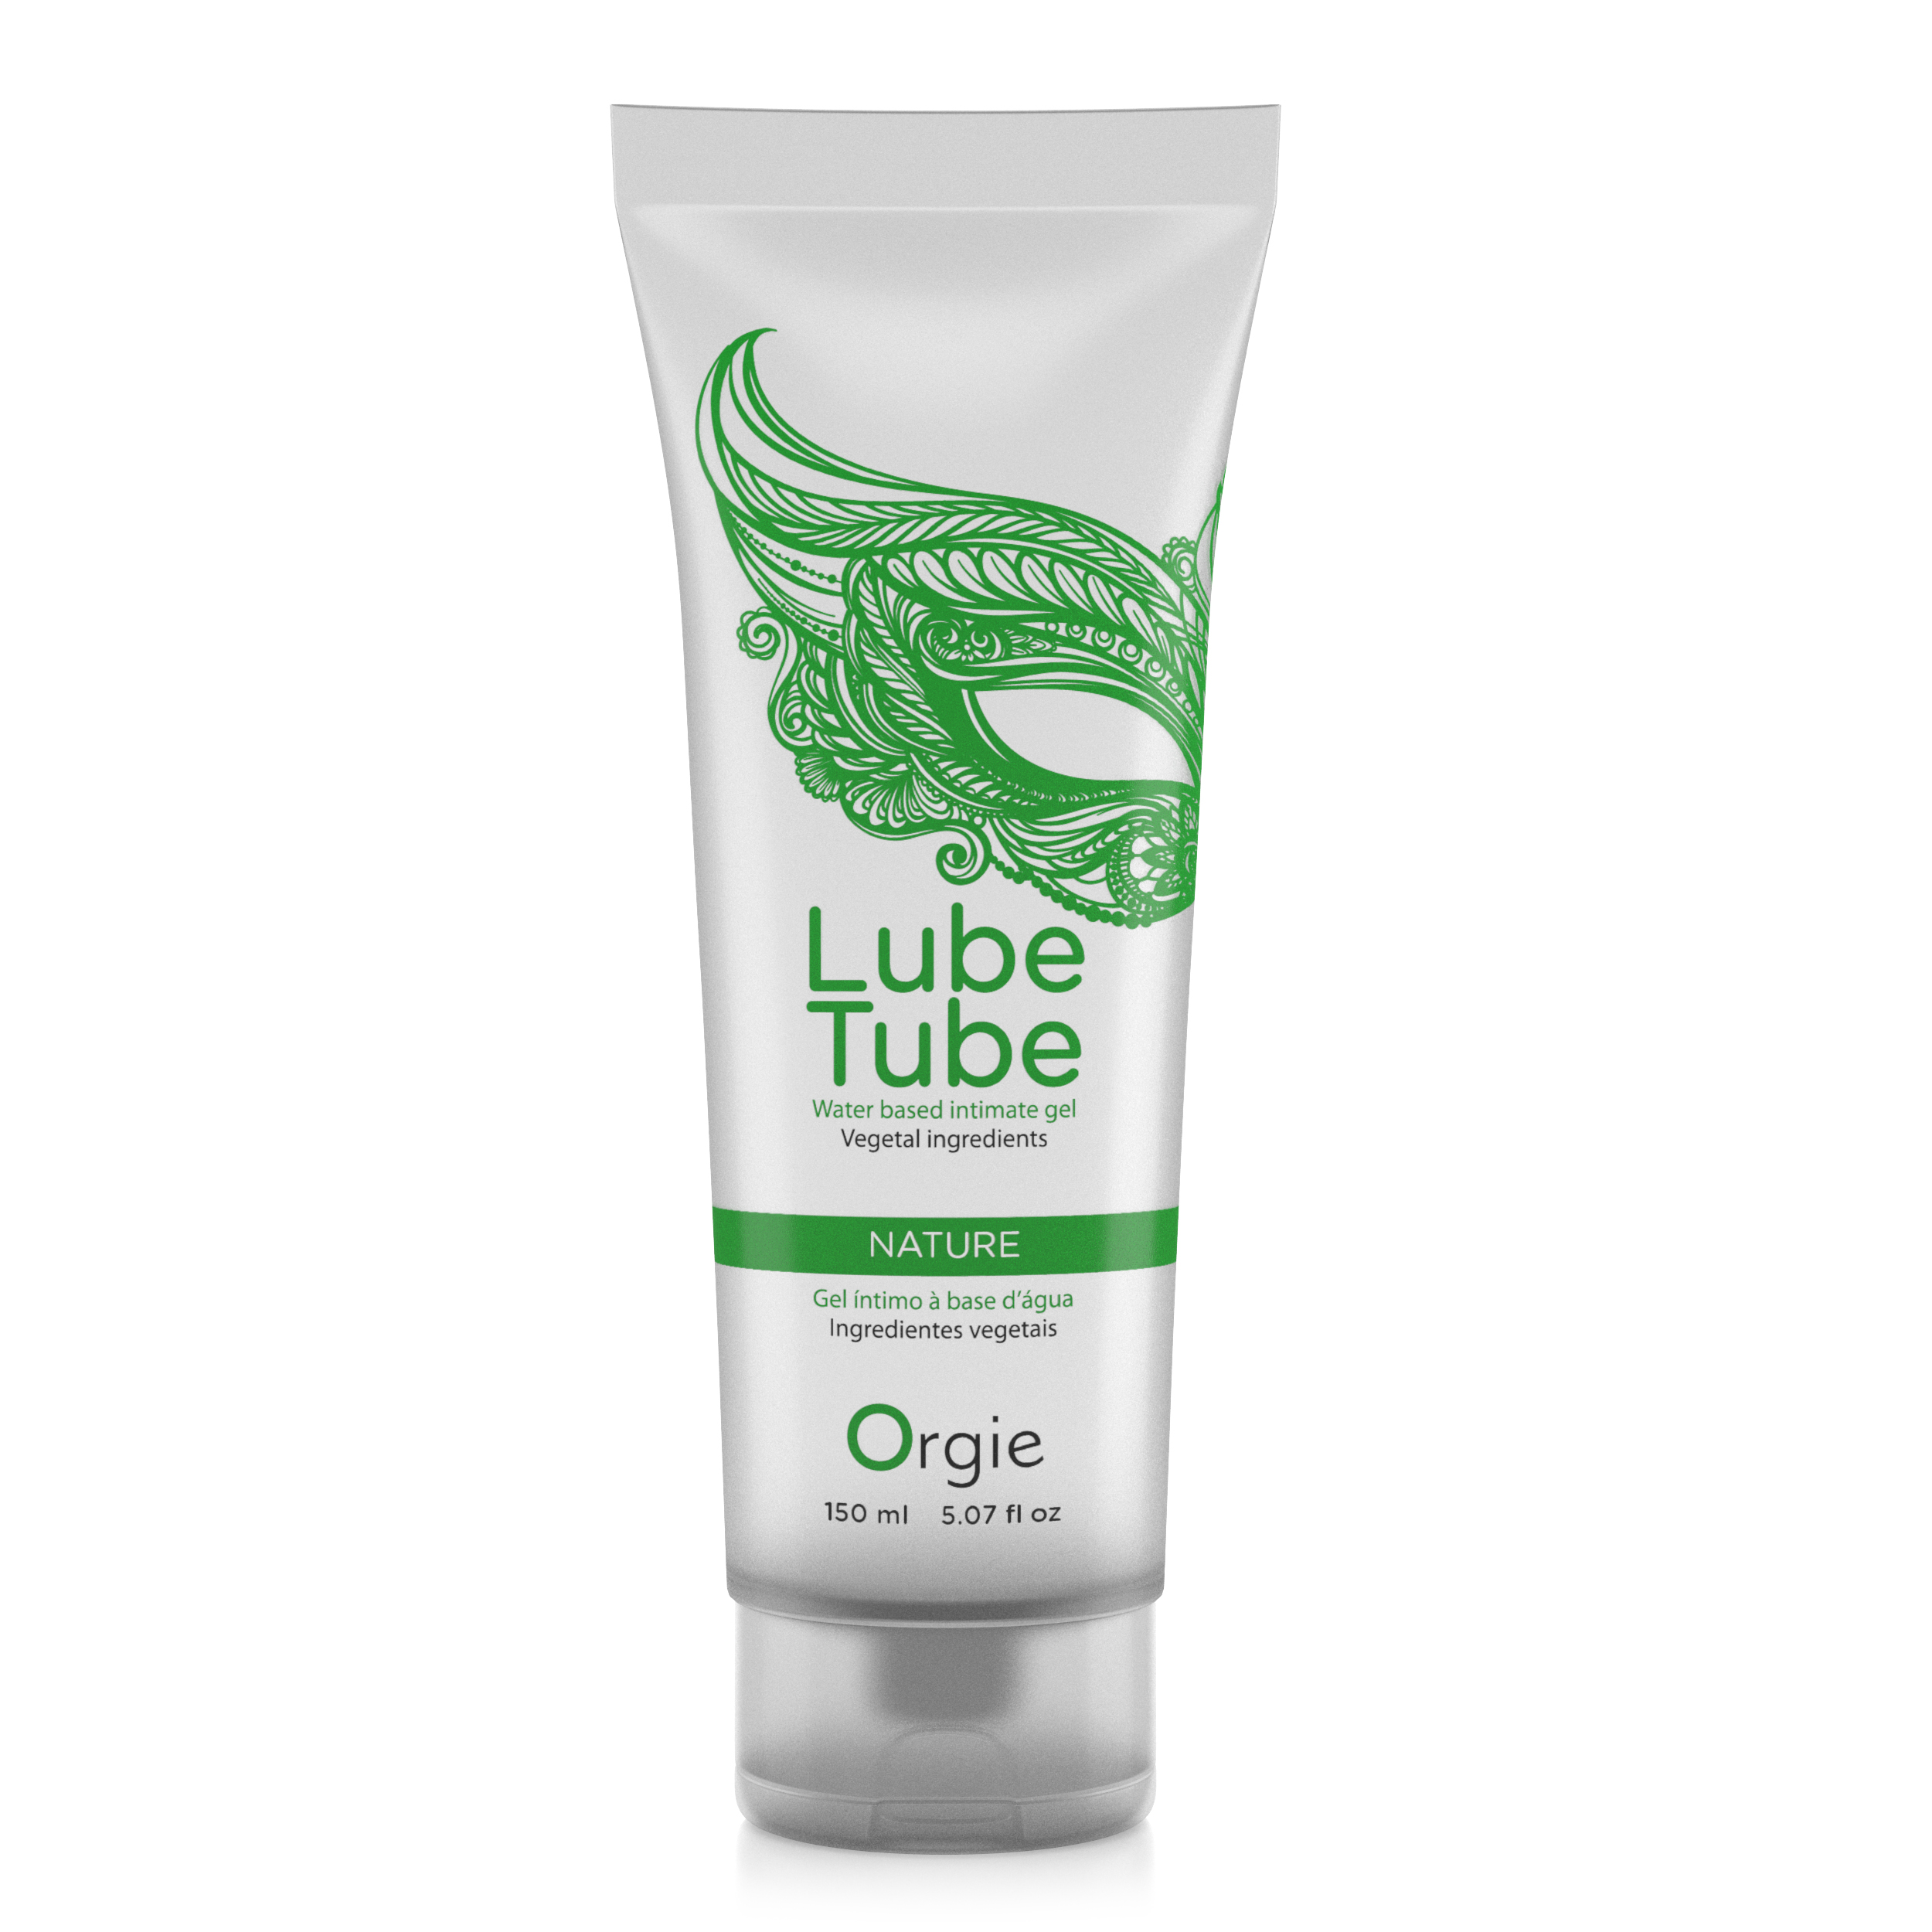 Lube Tube Nature Gleitgel 150ml | Orgie | Marken